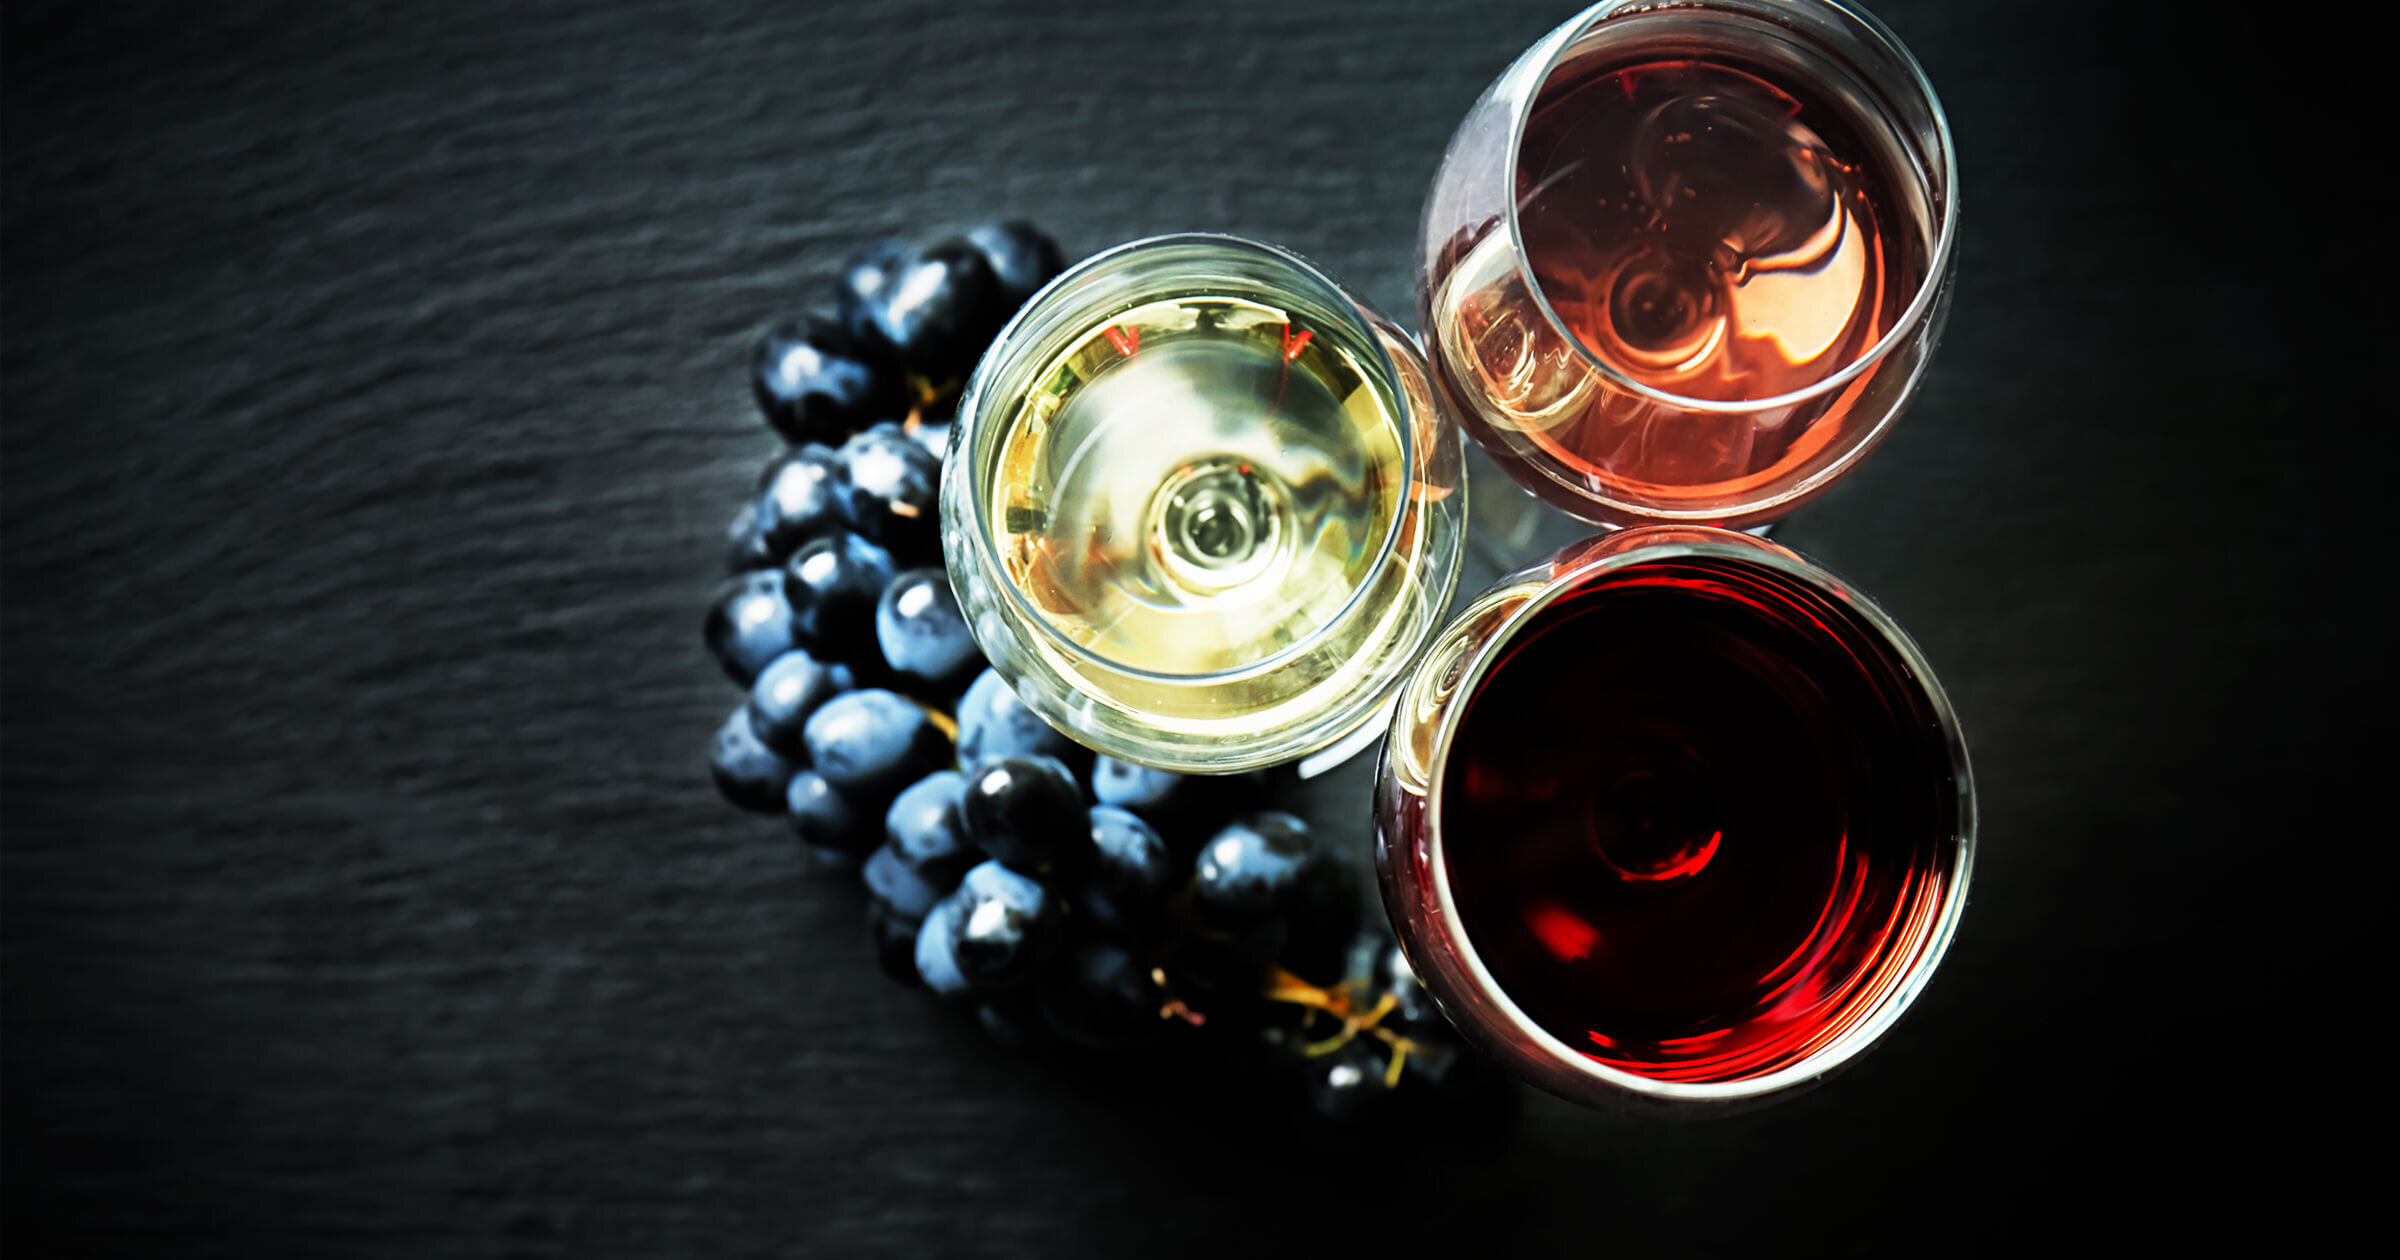 『ブラン・ド・ノワール』黒ブドウのピノ・ノワールから白ワインはなぜ？